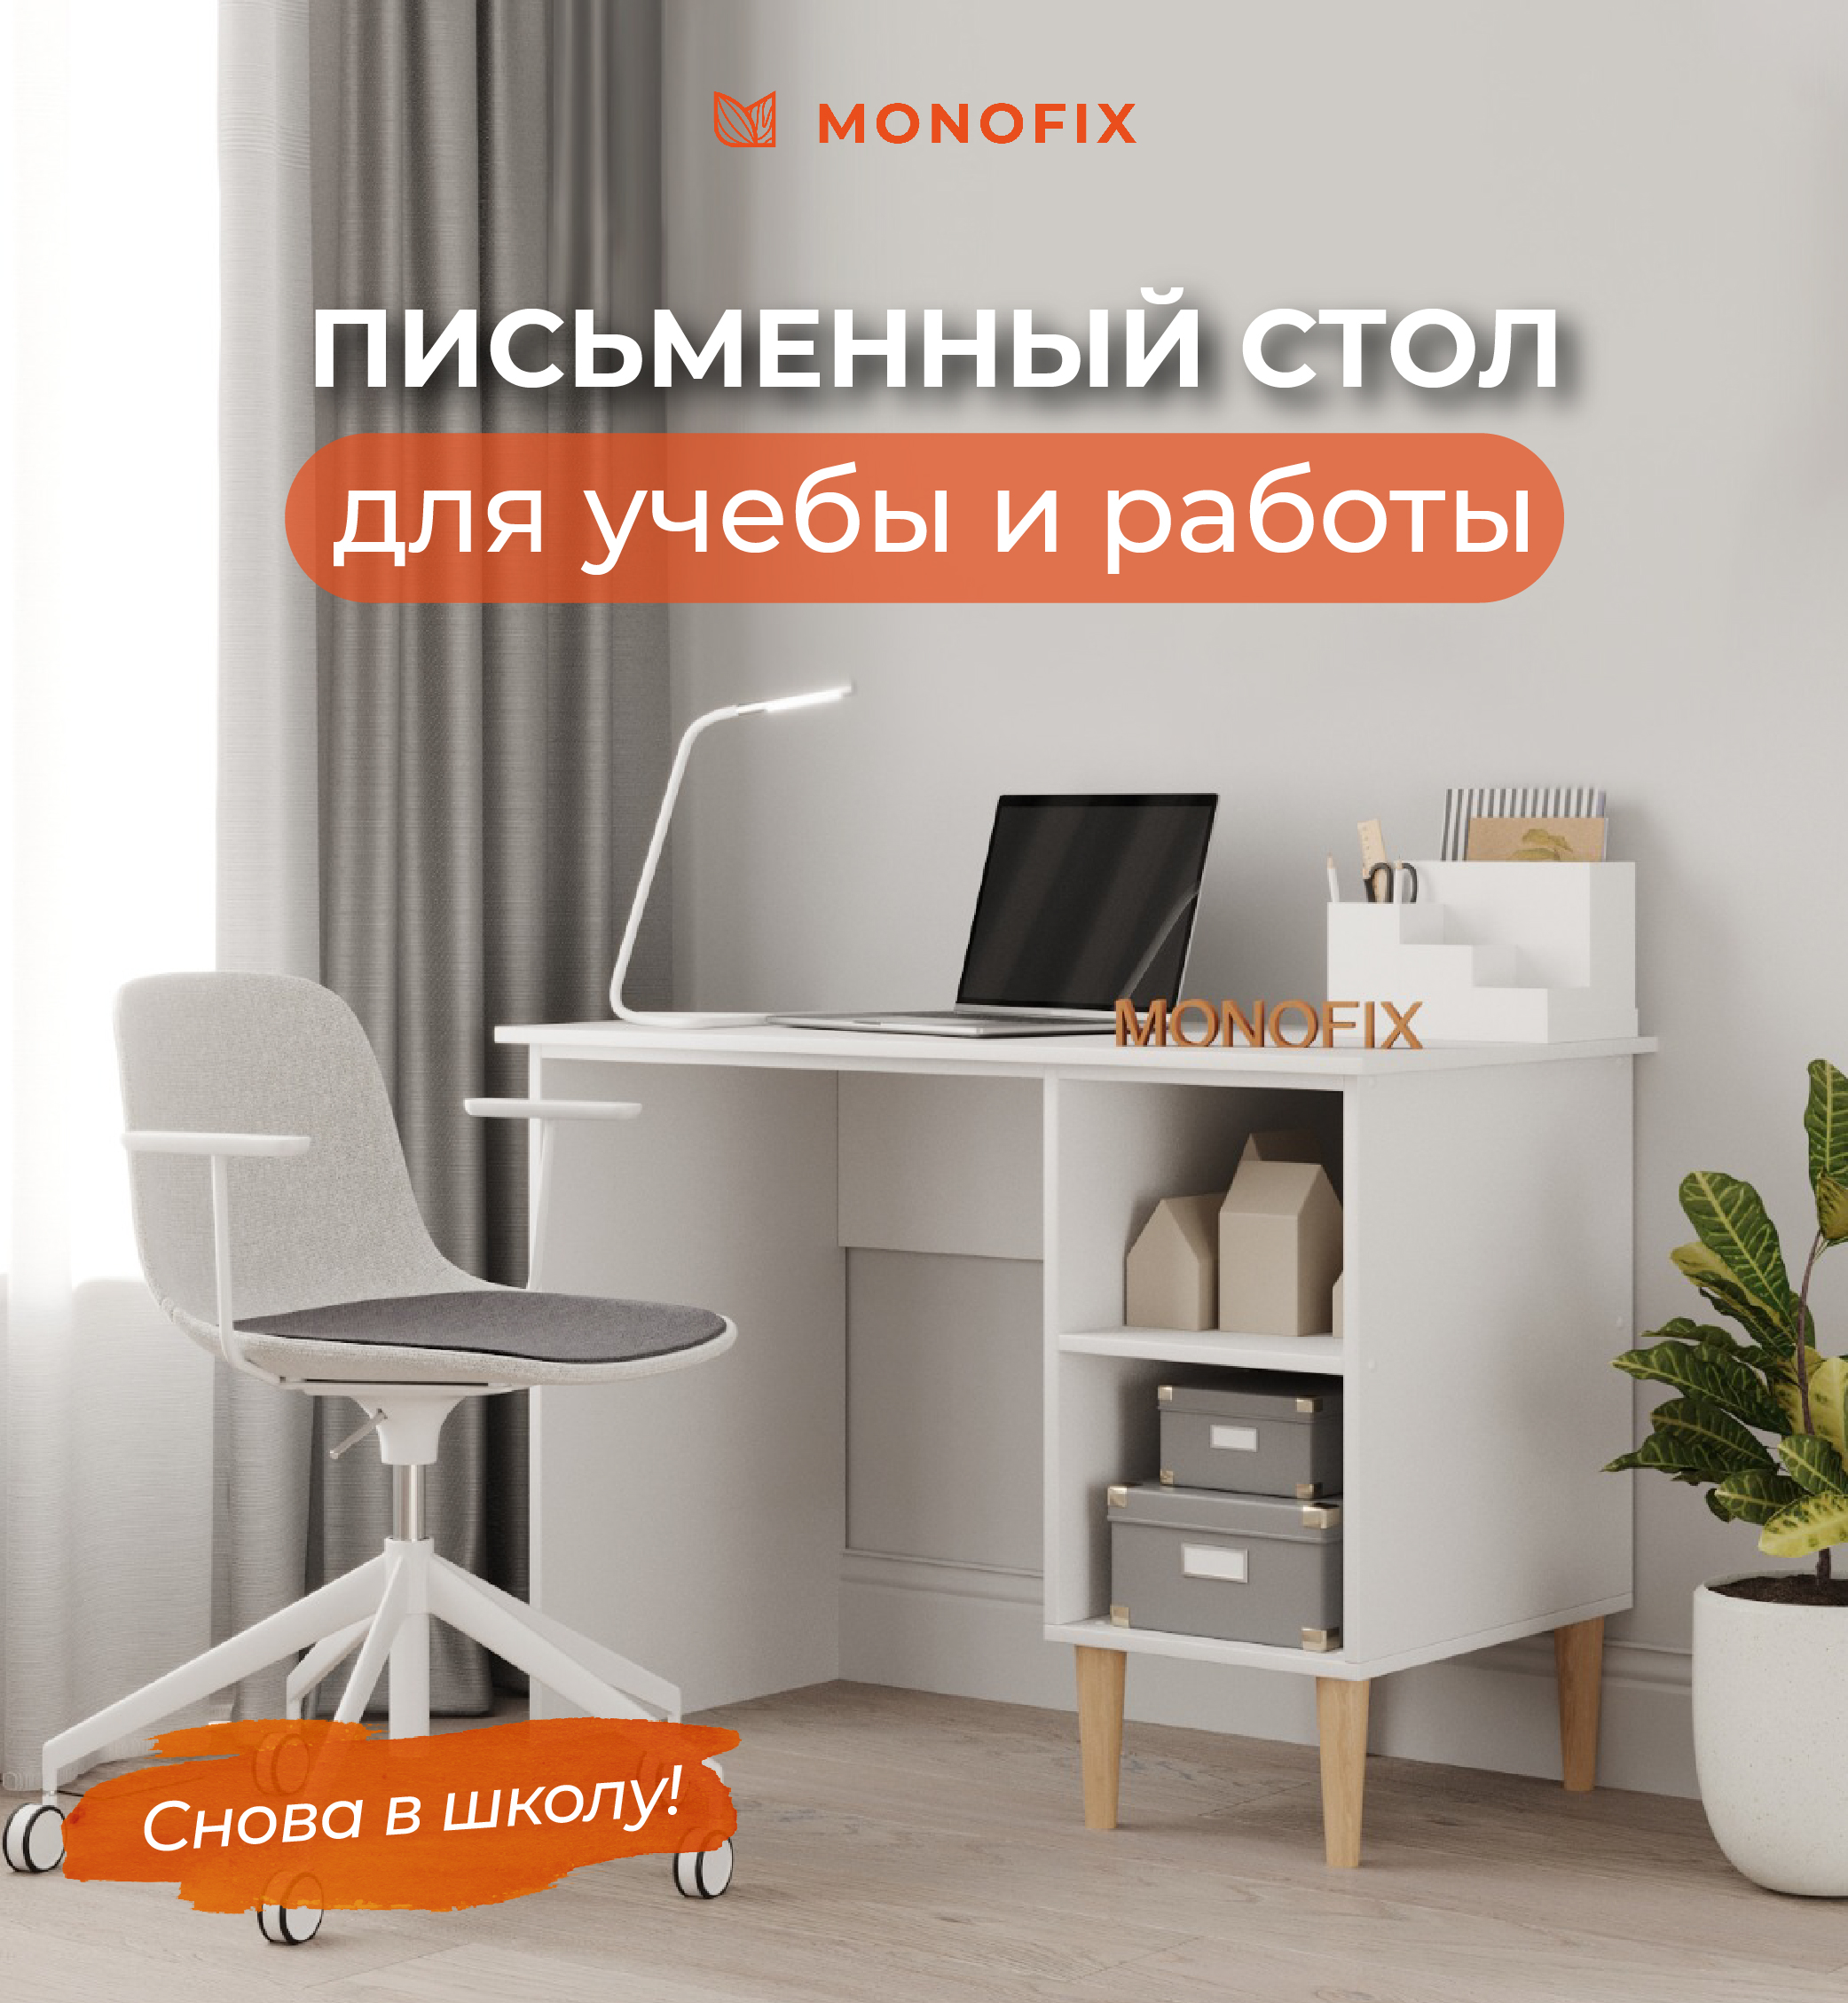 Отзывы о «Купи для дома. ру», Хабаровск, Уссурийский бульвар, 25 — Яндекс Карты